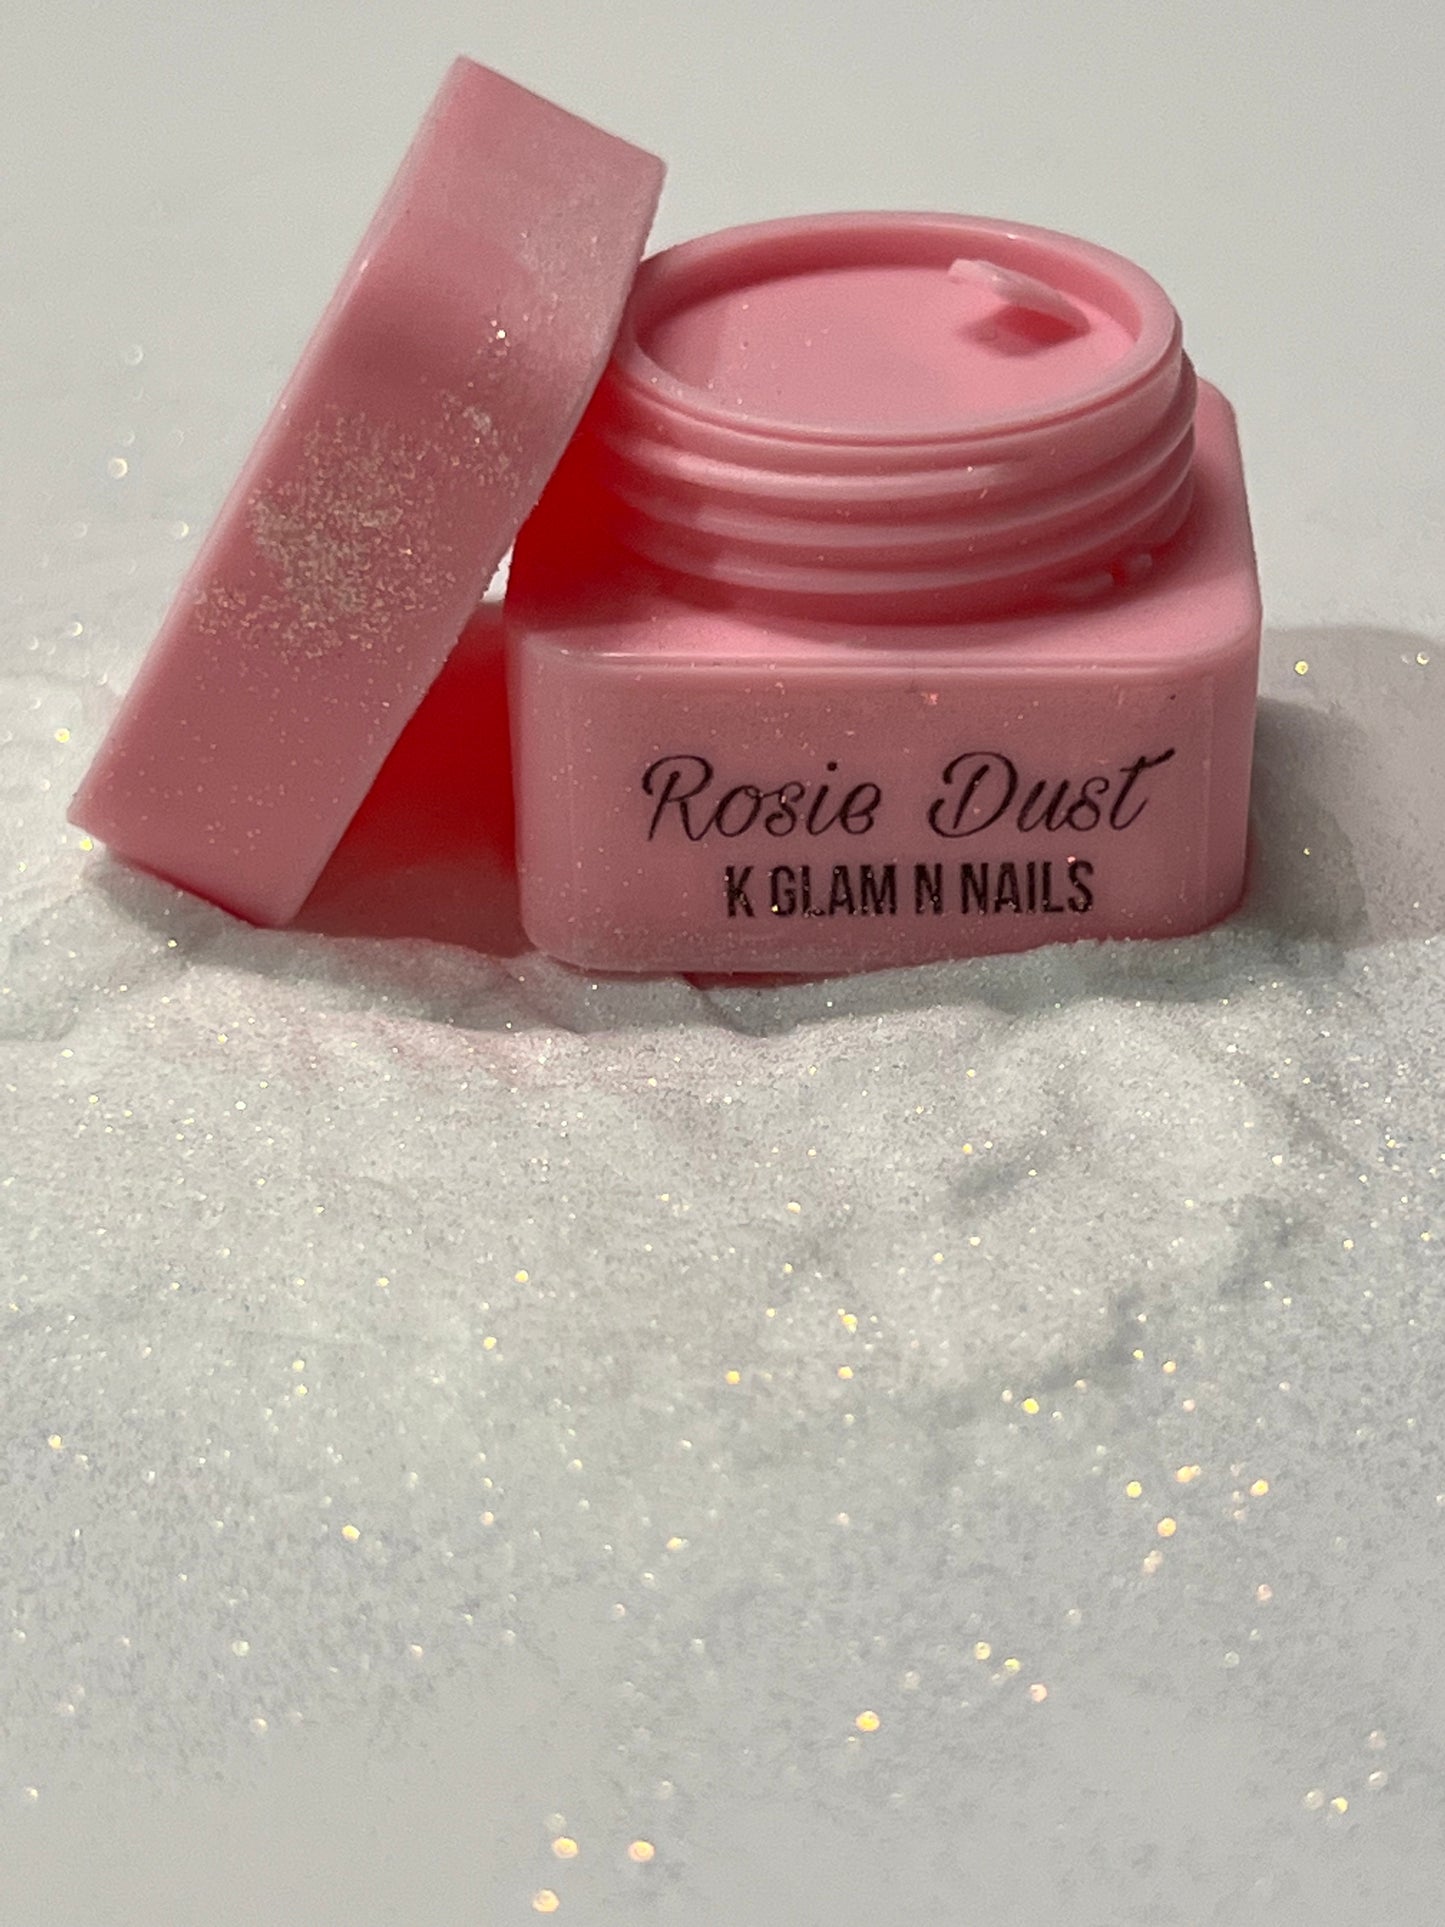 Rosie Dust